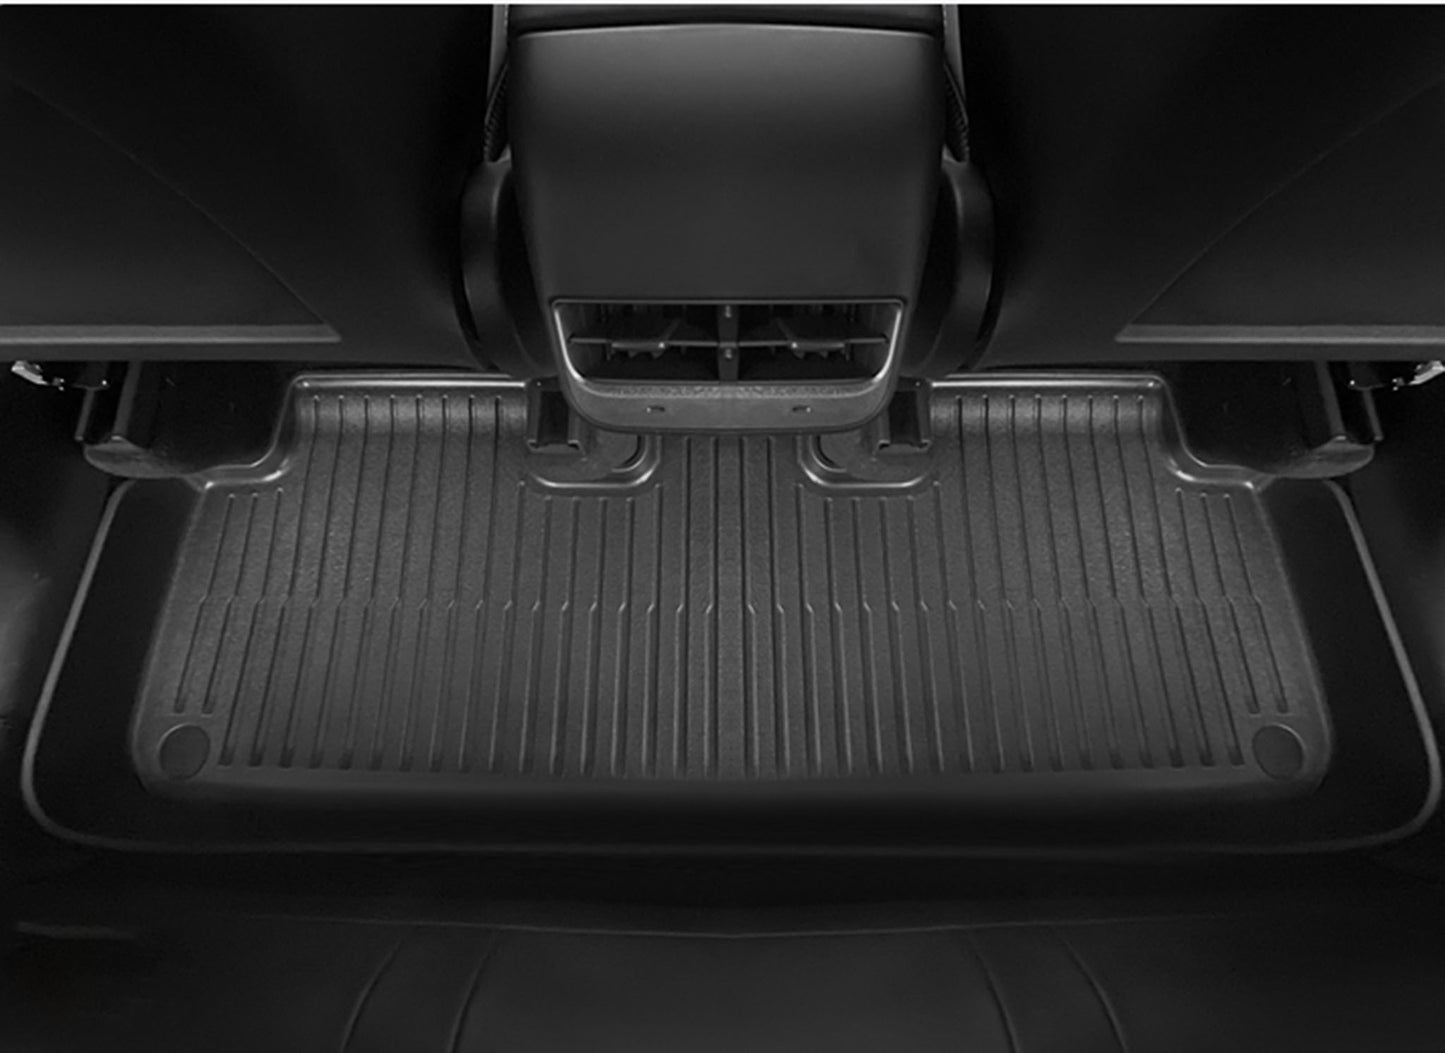 7 Seater Floor Mats for Tesla Model Y 2021-2023-Yeslak